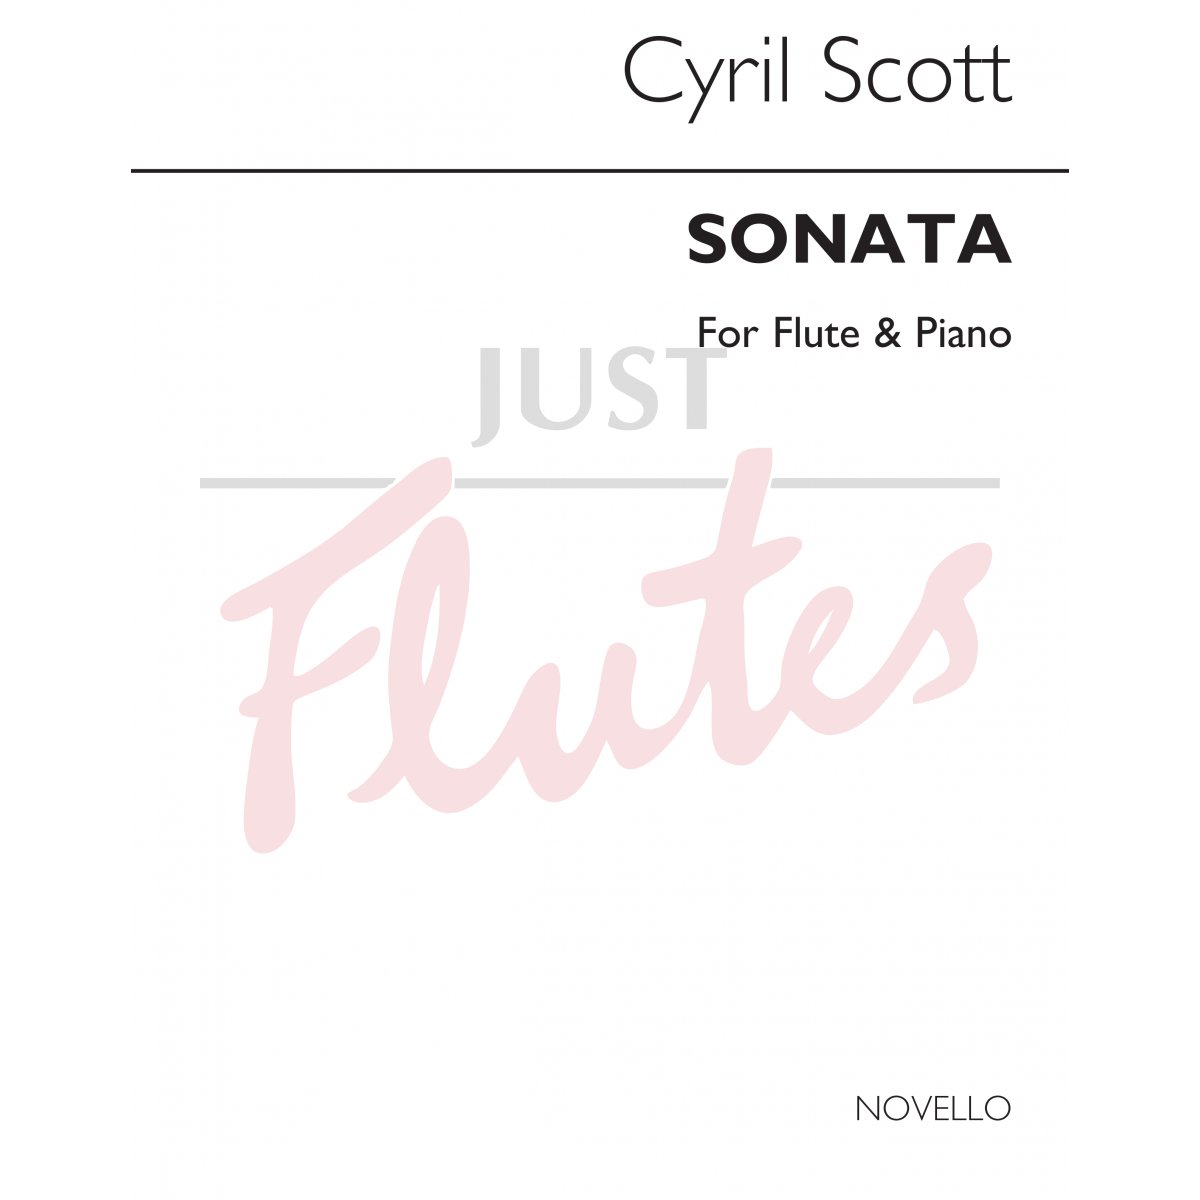 Sonata For Flute and Pianoforte